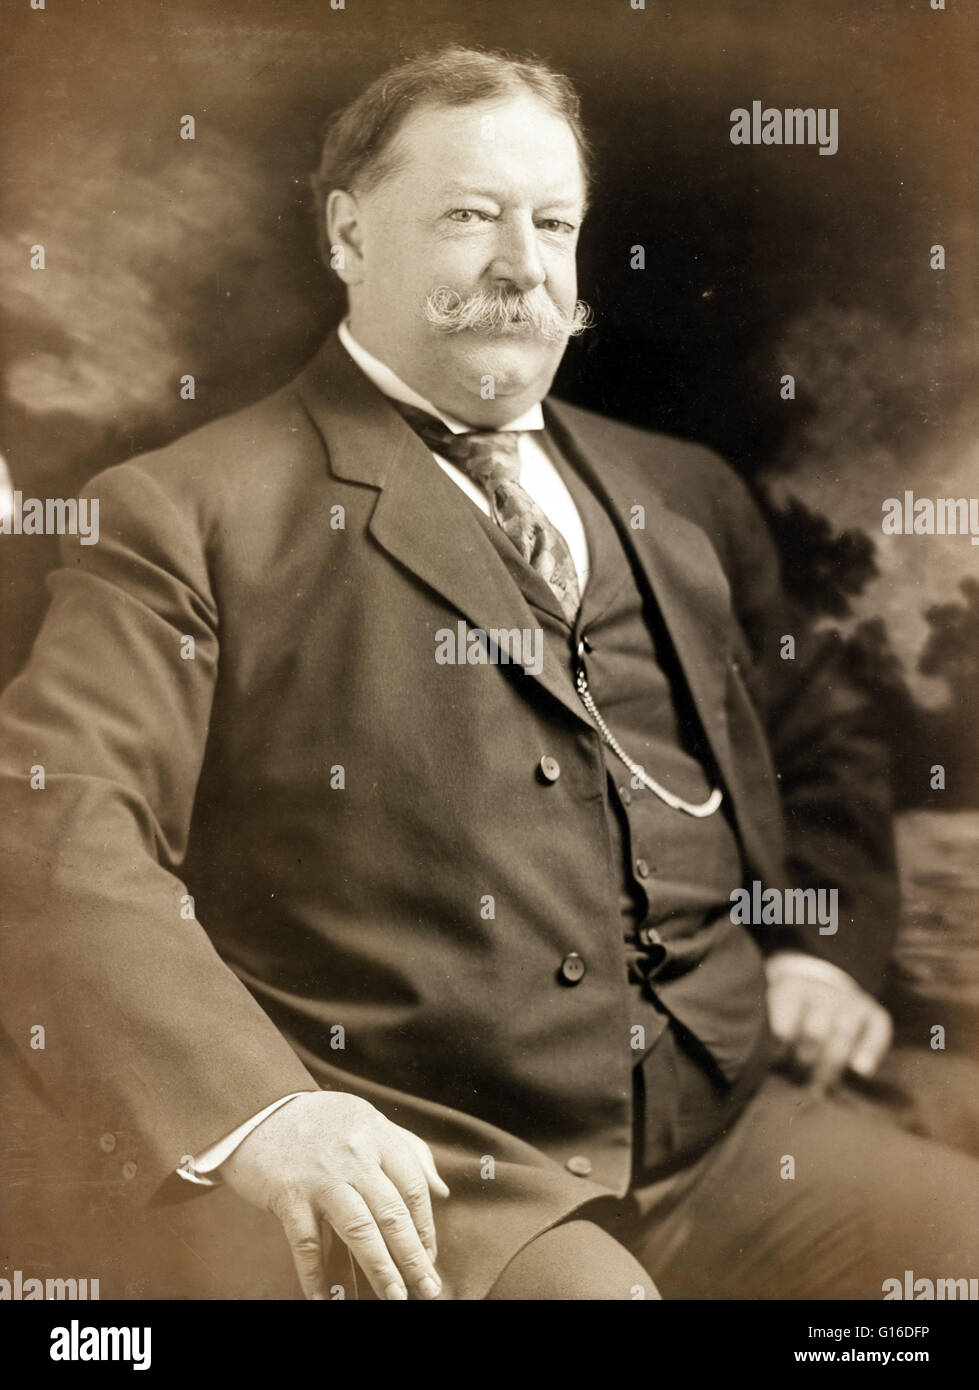 Il segretario della guerra Taft fotografato Giugno 8, 1907 da Giulio Cesare Strauss. William Howard Taft (Settembre 15, 1857 - Marzo 8, 1930) era il ventisettesimo Presidente degli Stati Uniti (1909-1913) e più tardi il decimo capo di Giustizia degli Stati Uniti (1921-1930). Foto Stock